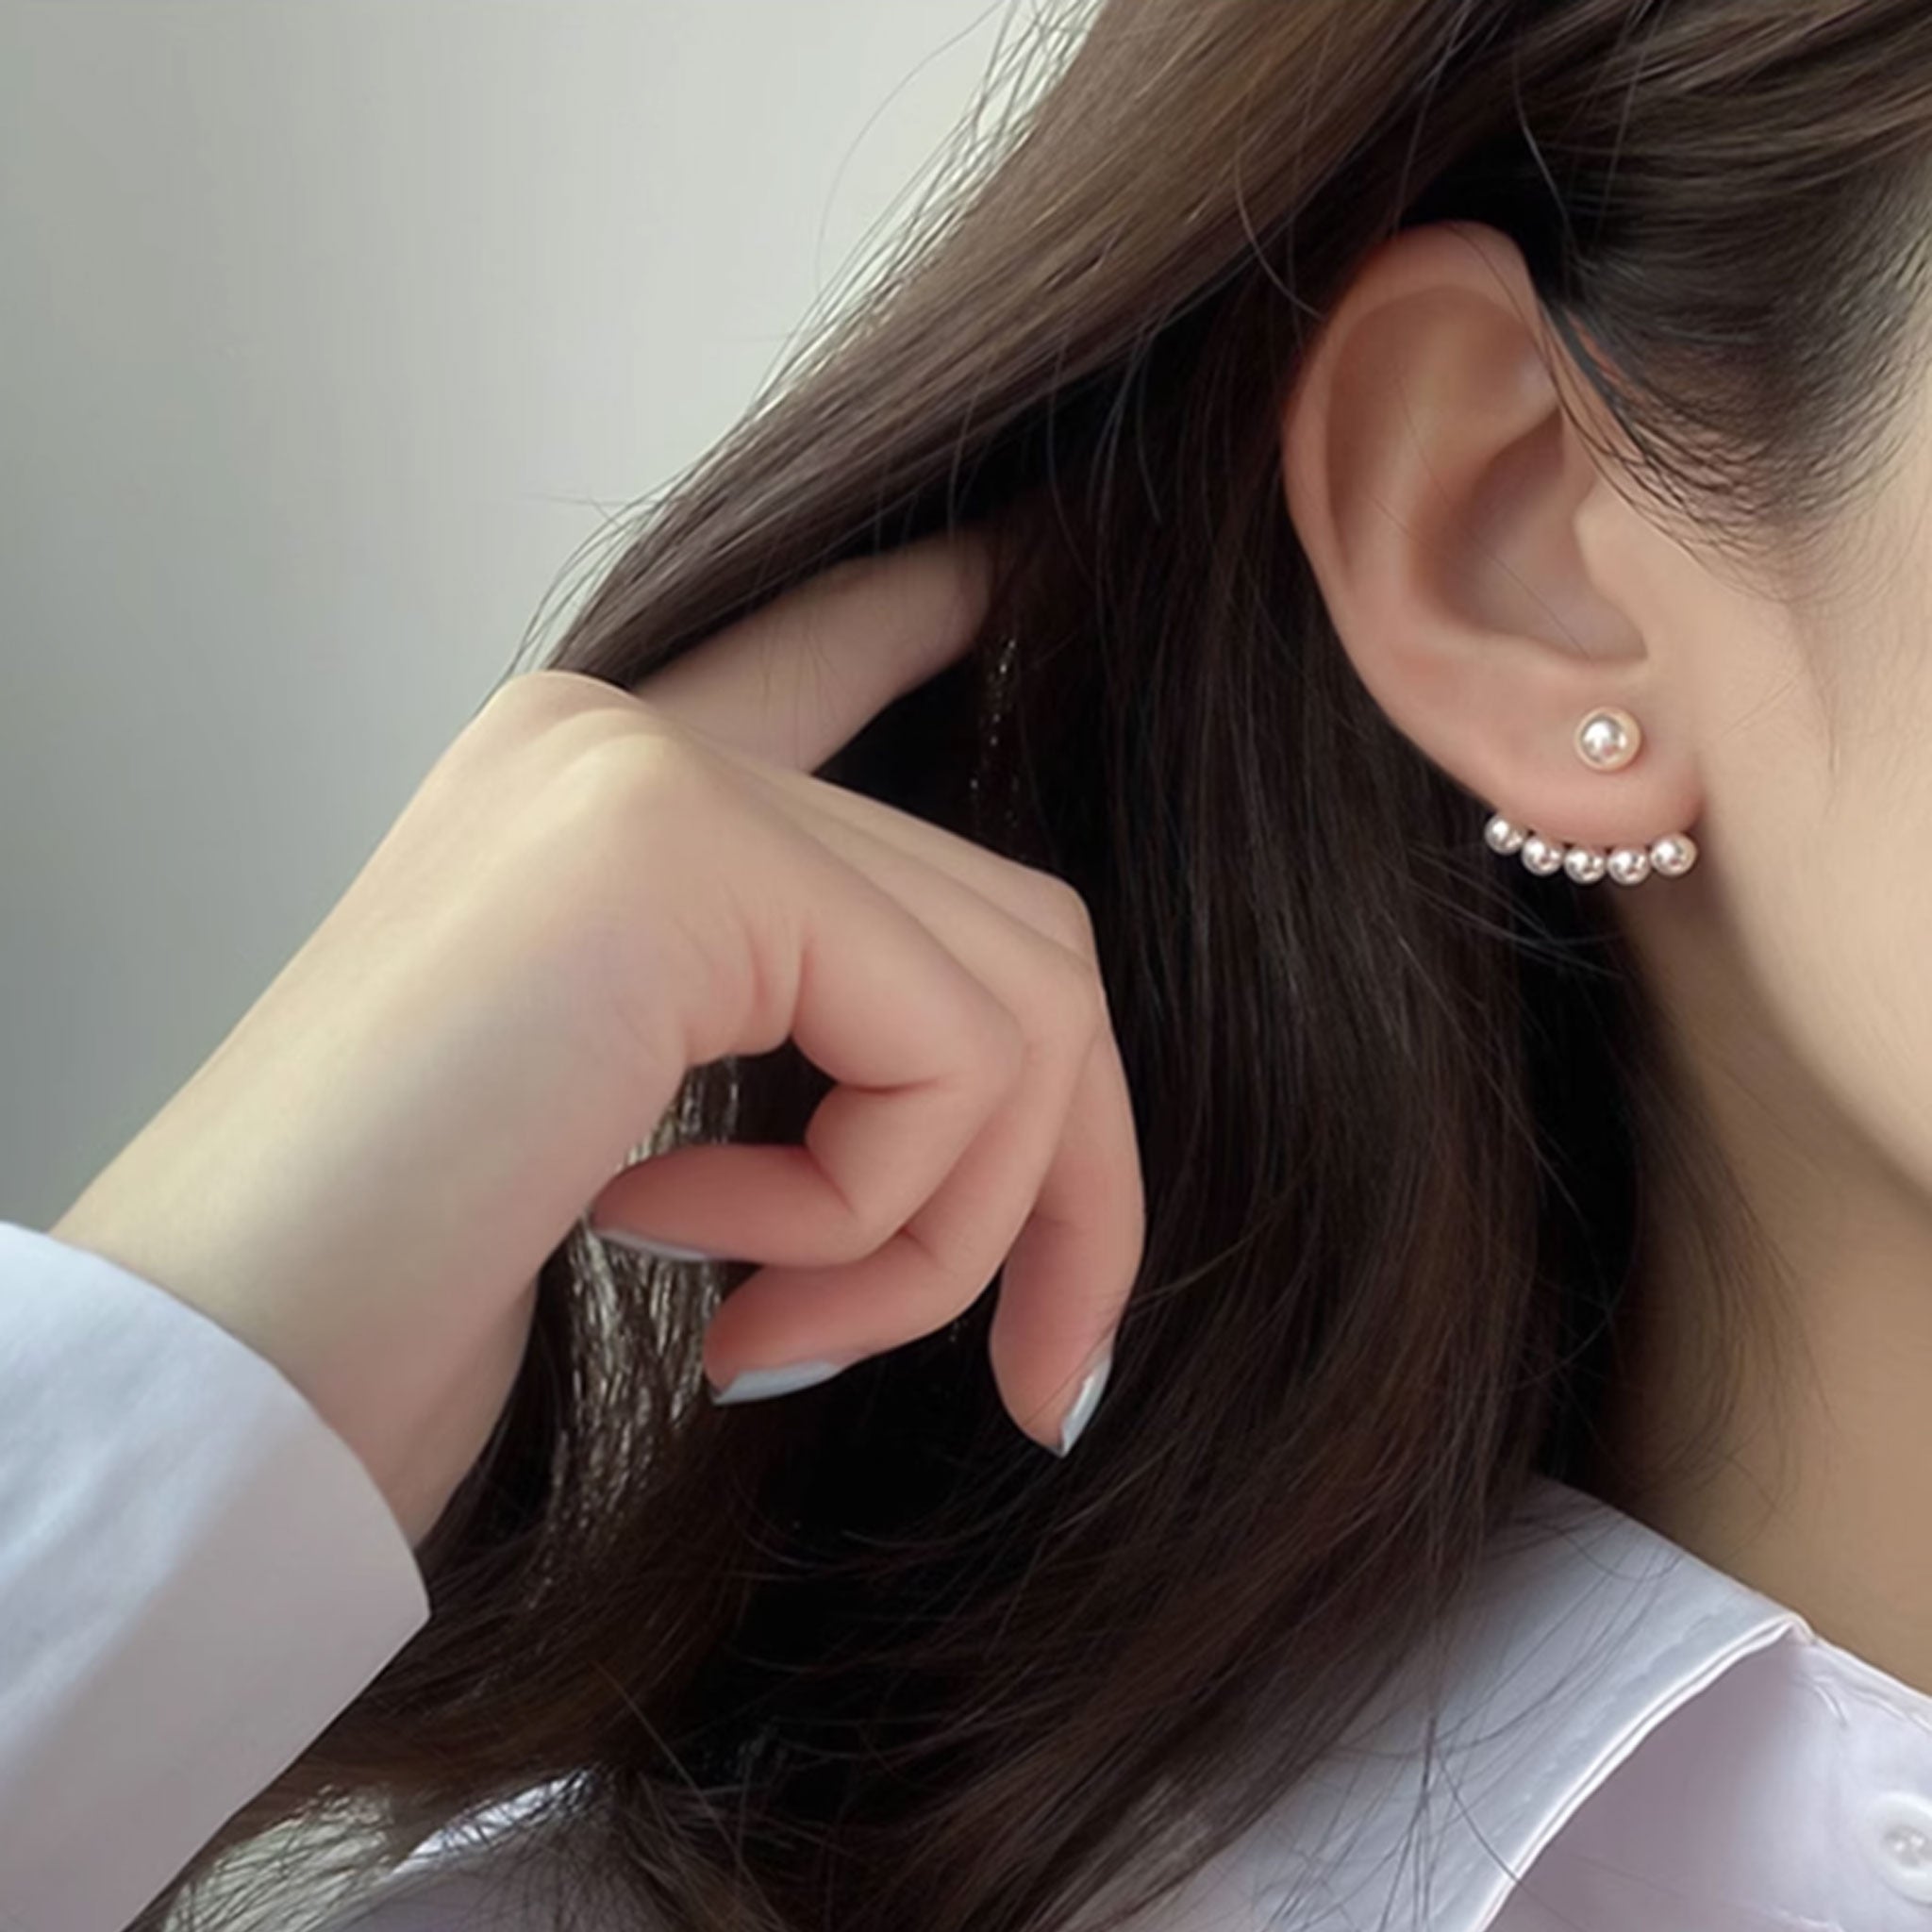 Pearl Stud Earrings 1pair